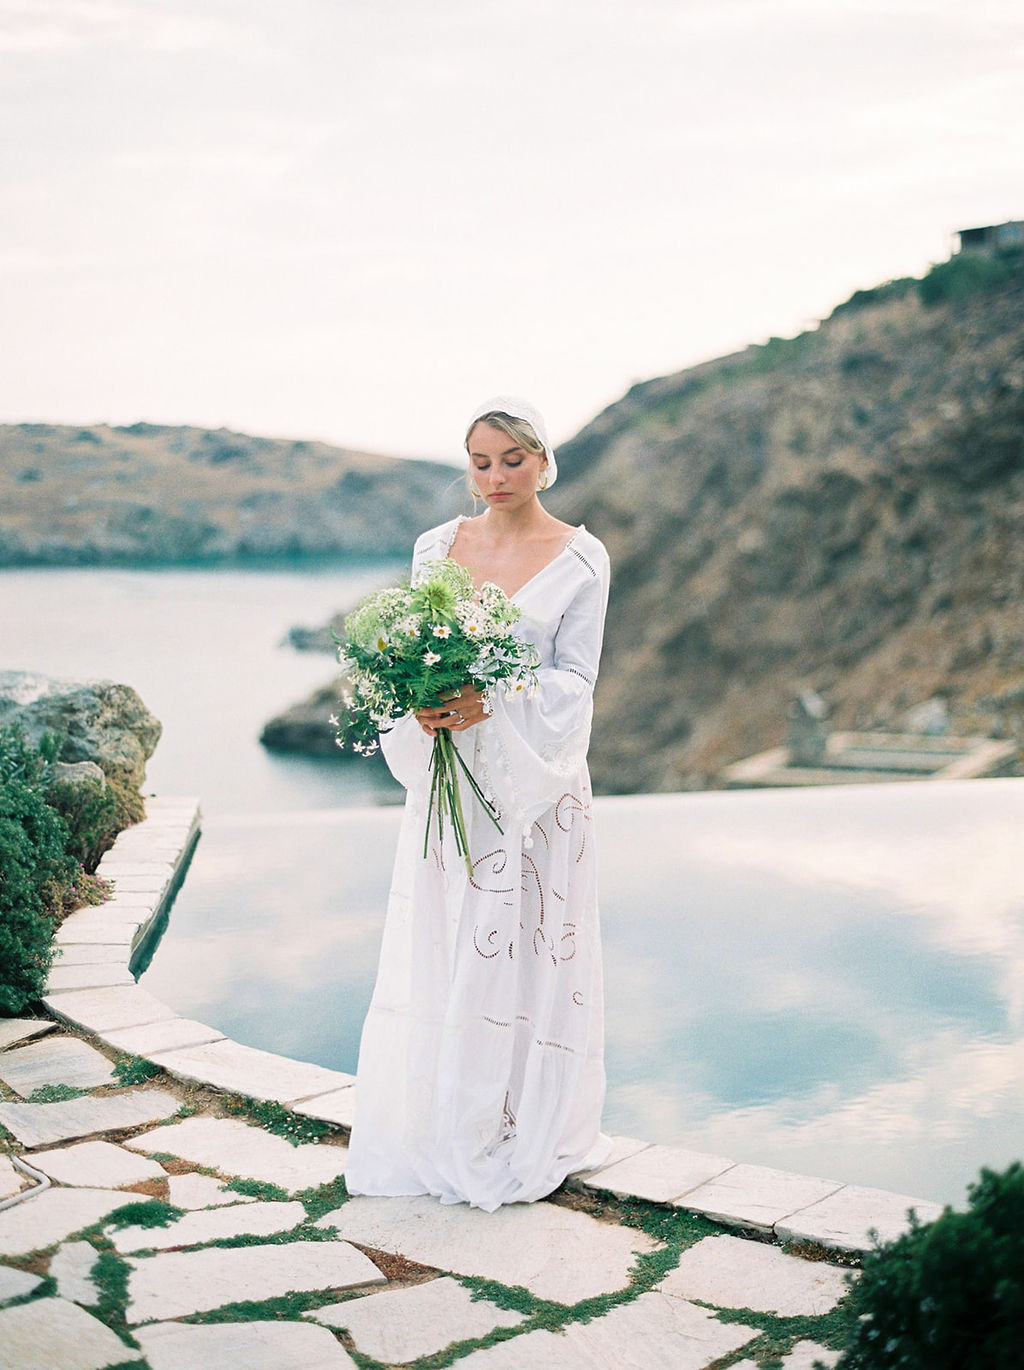 Une escapade romantique sur une île grecque